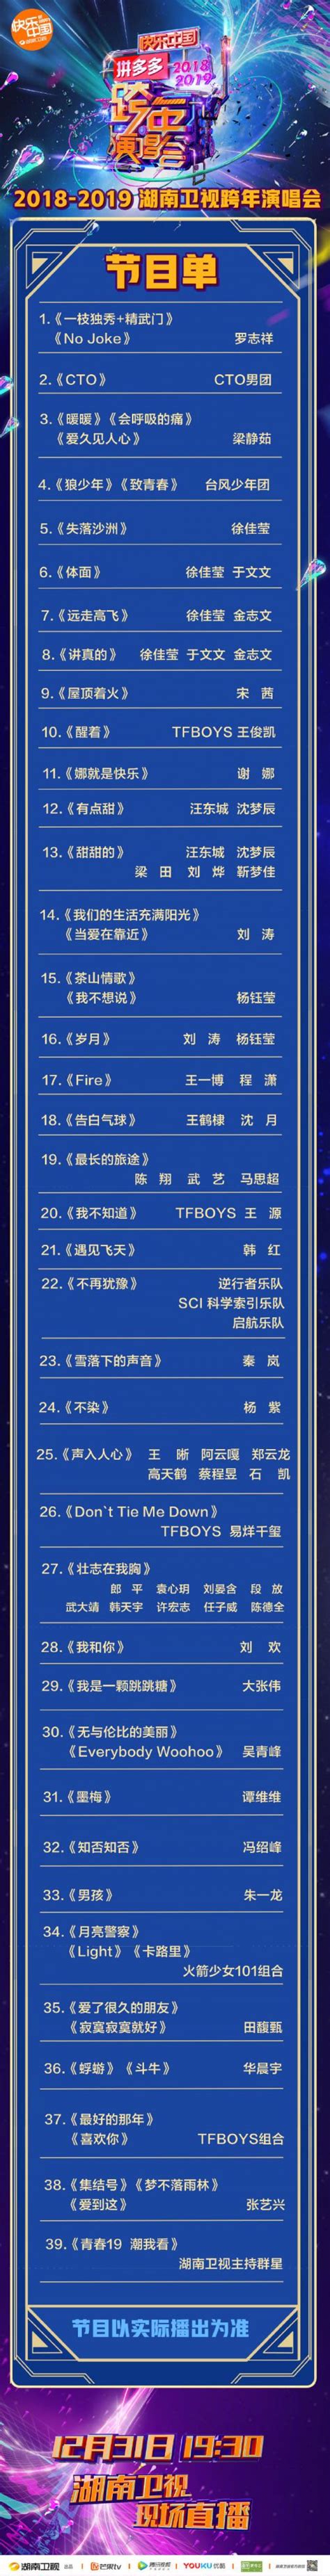 2018-2019湖南卫视跨年演唱会几点开始时间 官方节目单-闽南网